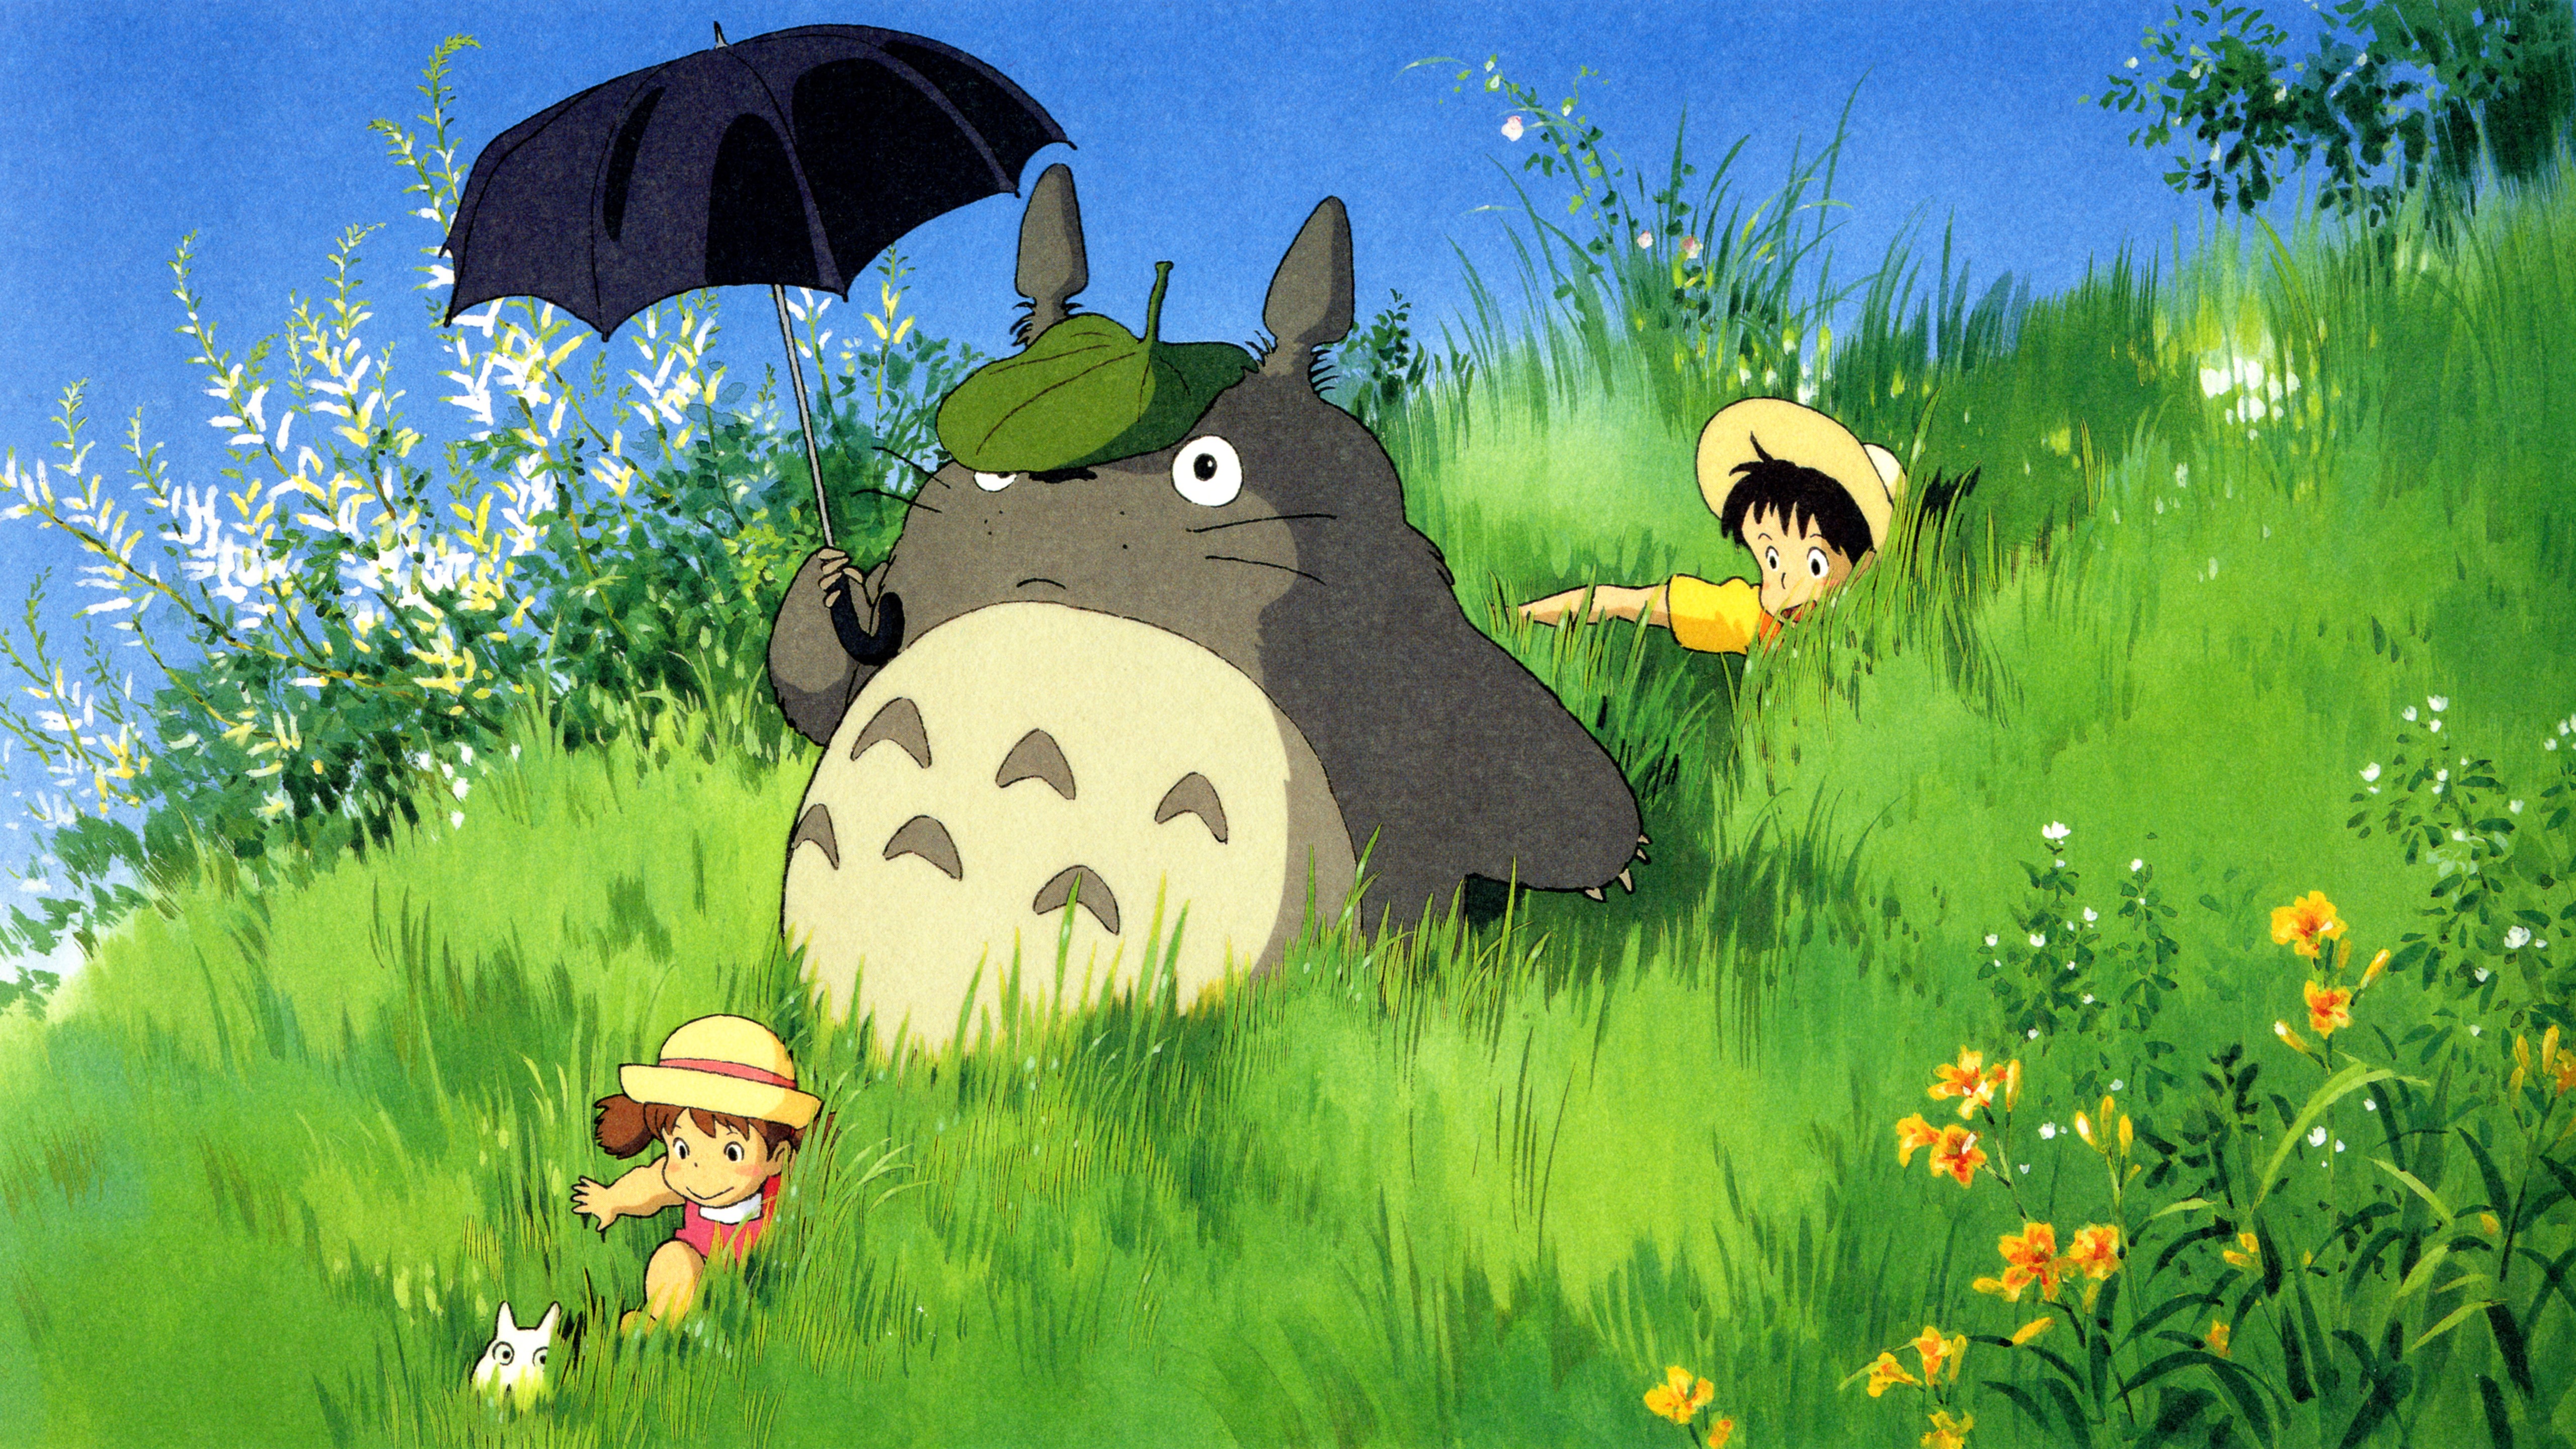 Wallpaper My Neighbor Totoro, Classic Anime - My Neighbor Totoro Scenery , HD Wallpaper & Backgrounds